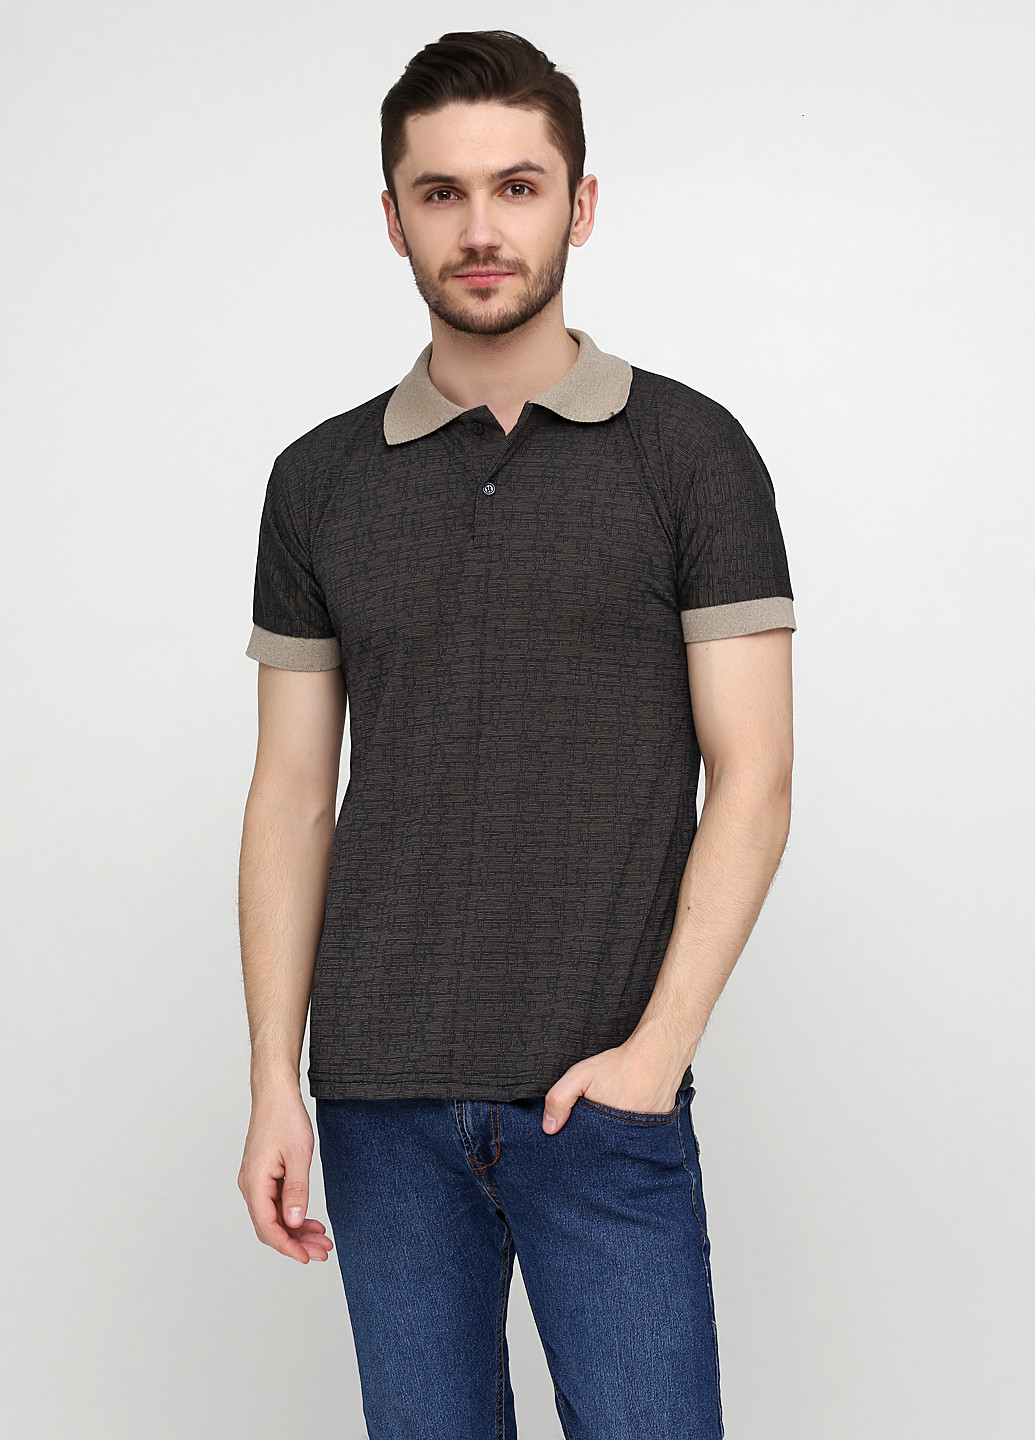 Темно-коричневая футболка-поло для мужчин Chiarotex с геометрическим узором